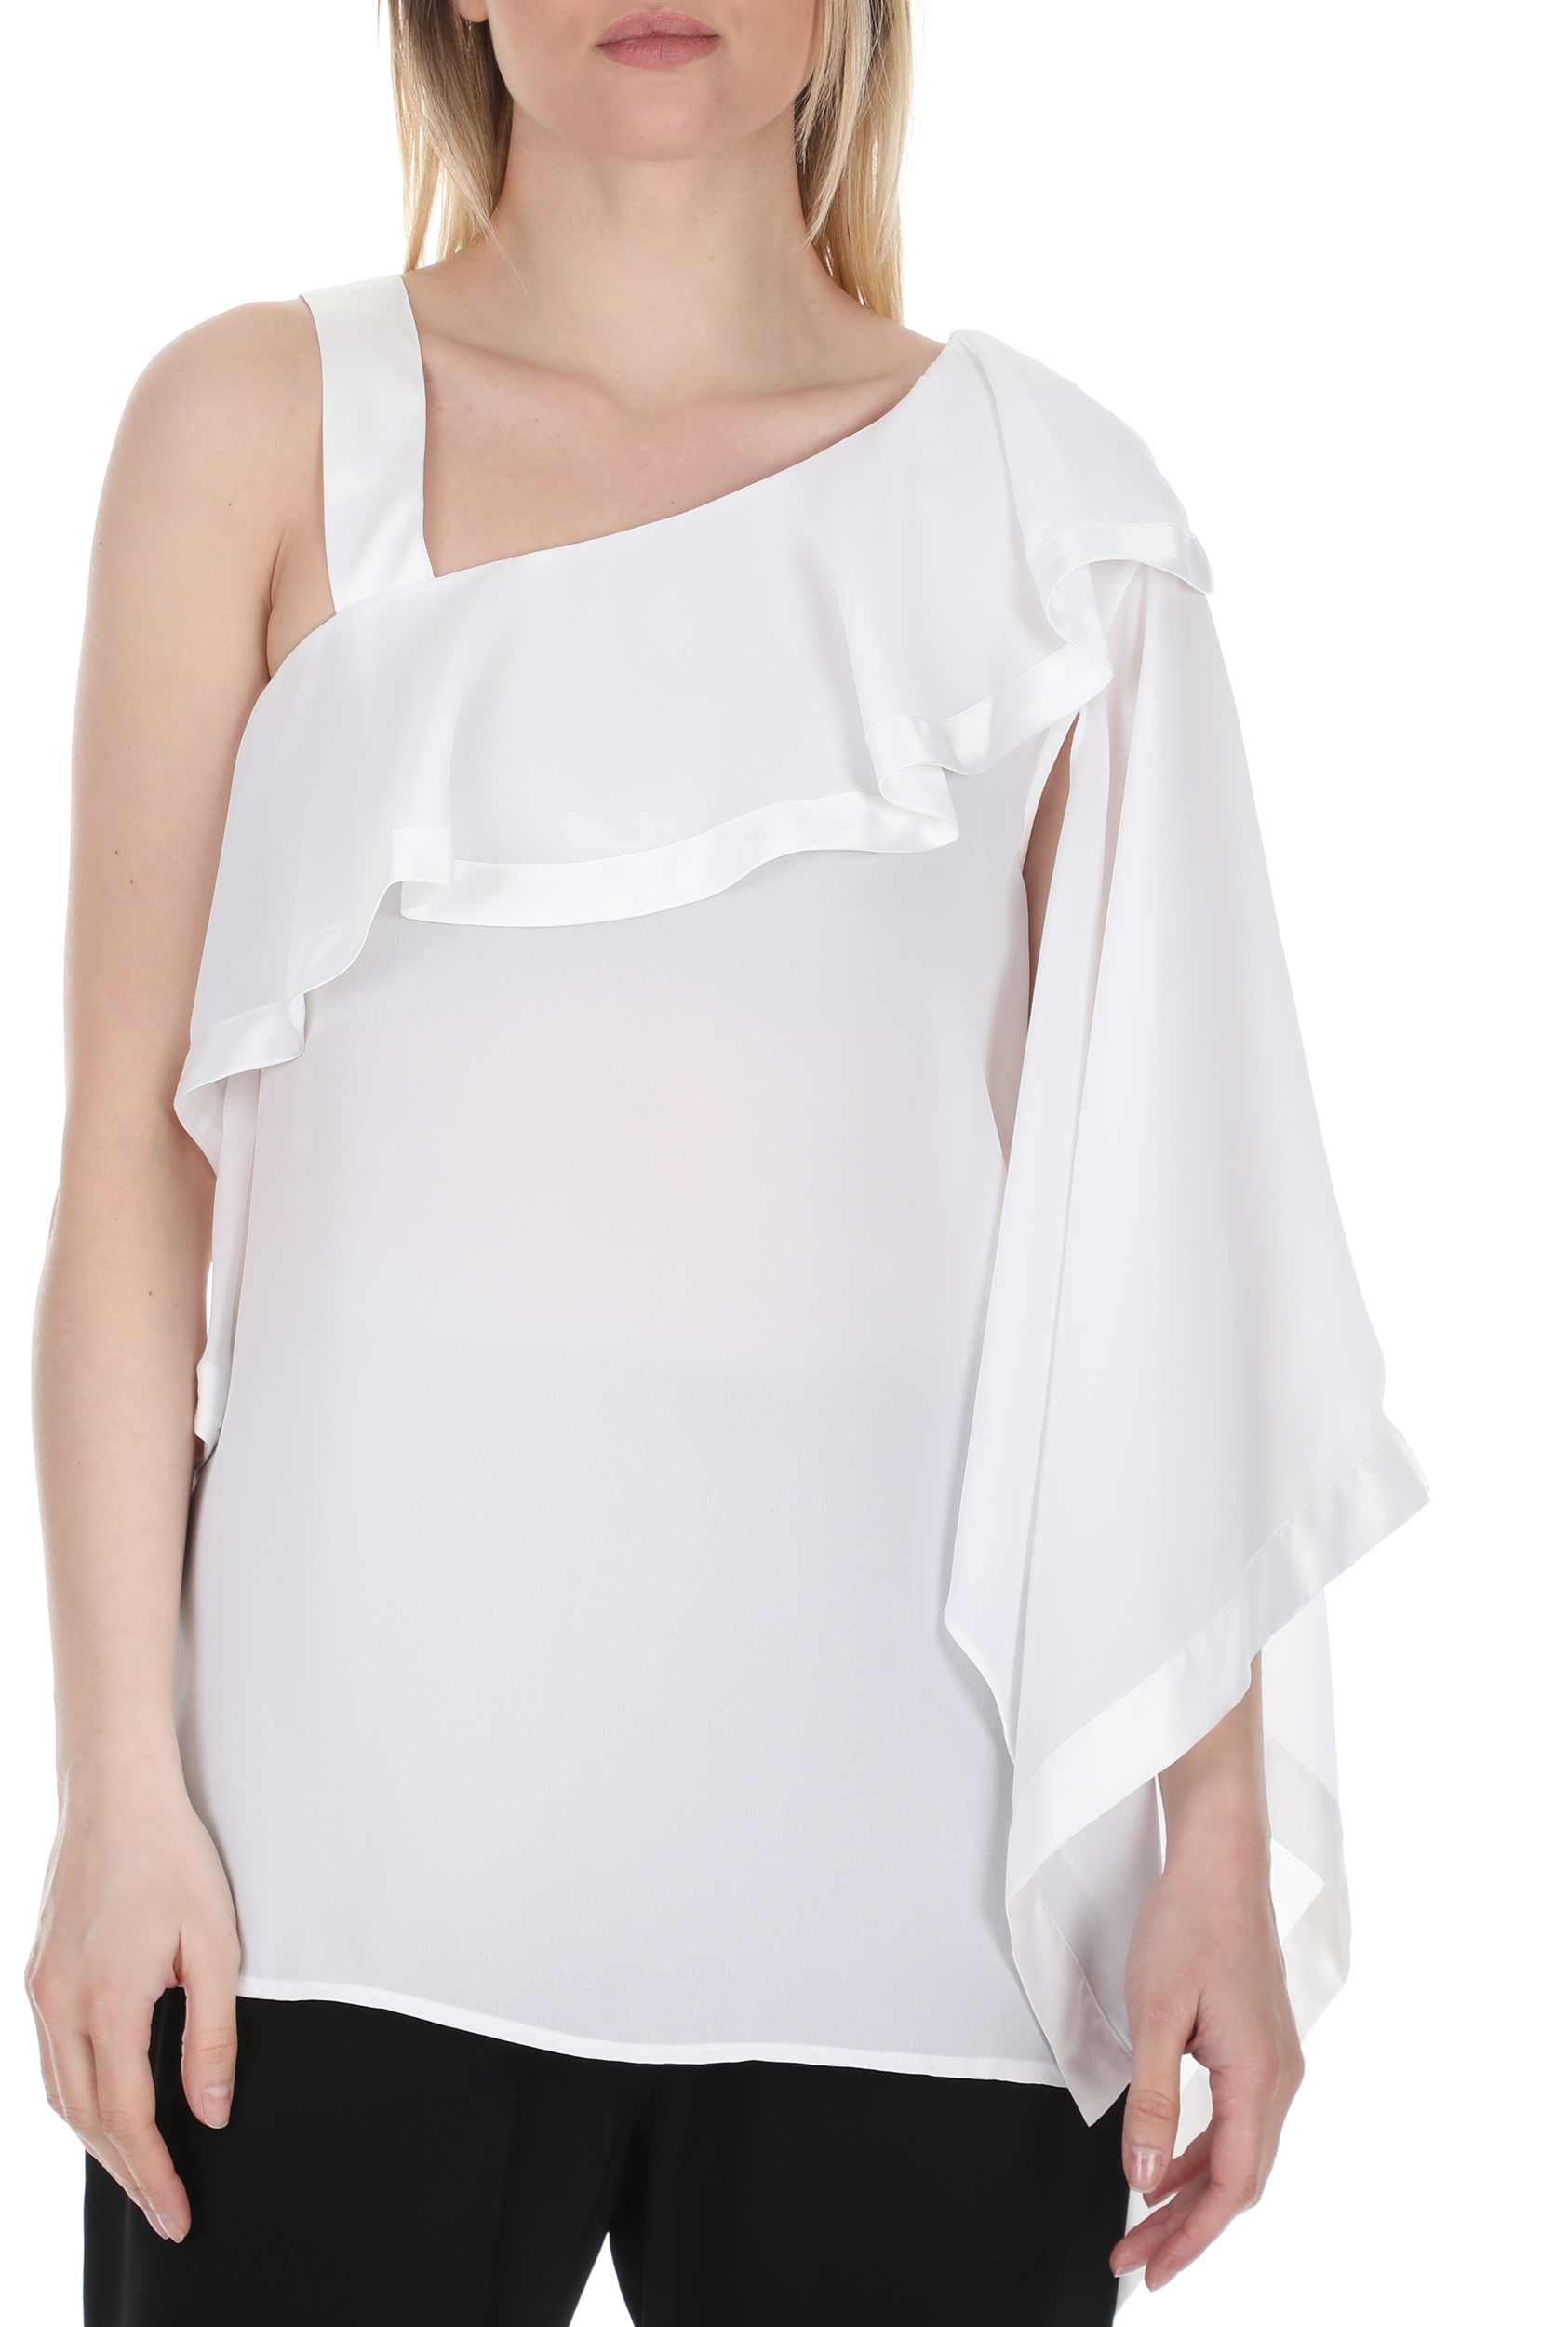 NENETTE Γυναικεία μπλούζα με έναν ώμο NENETTE FLIA λευκή